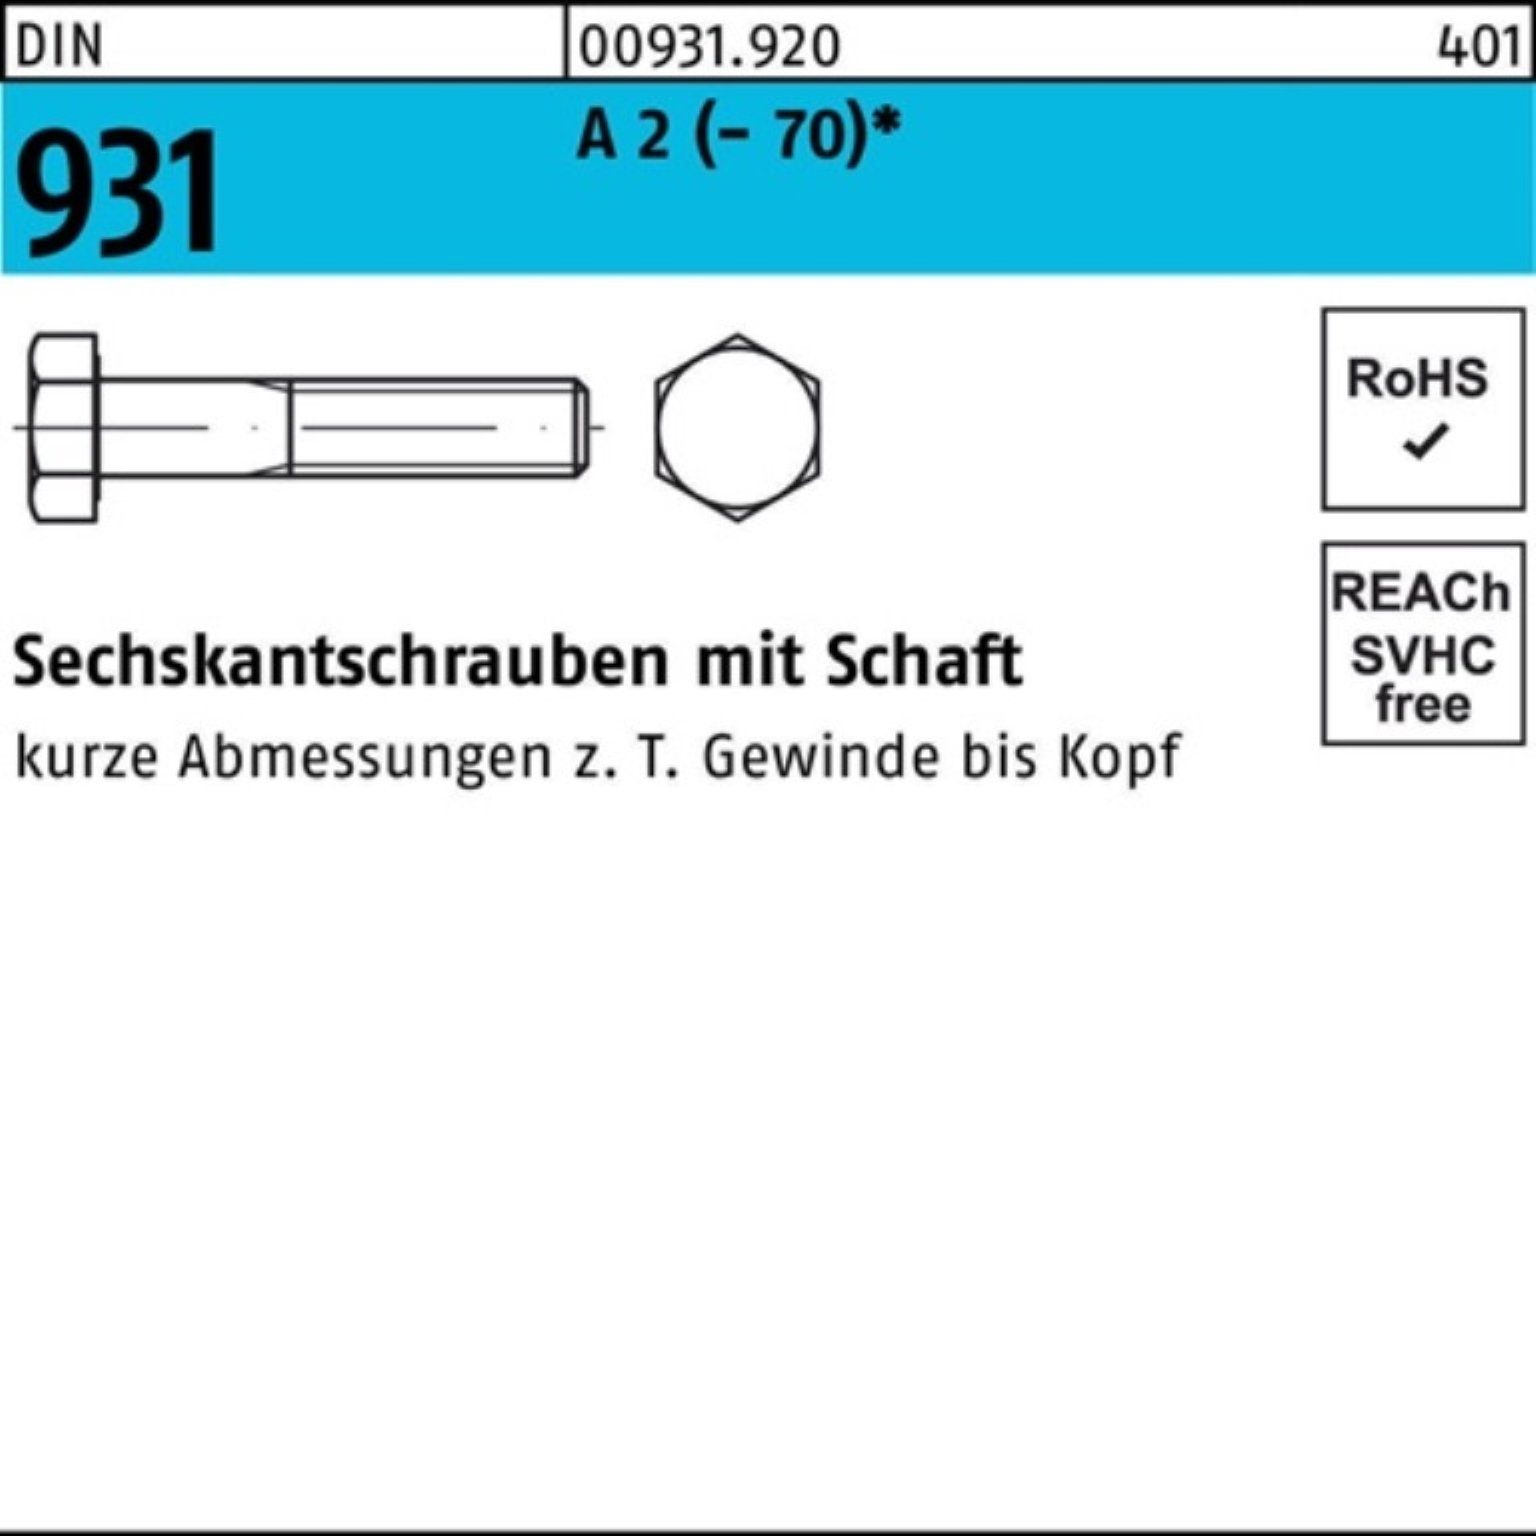 Reyher Sechskantschraube 100er M10x Sechskantschraube A Pack 931 DIN 1 170 2 Schaft Stü (70)